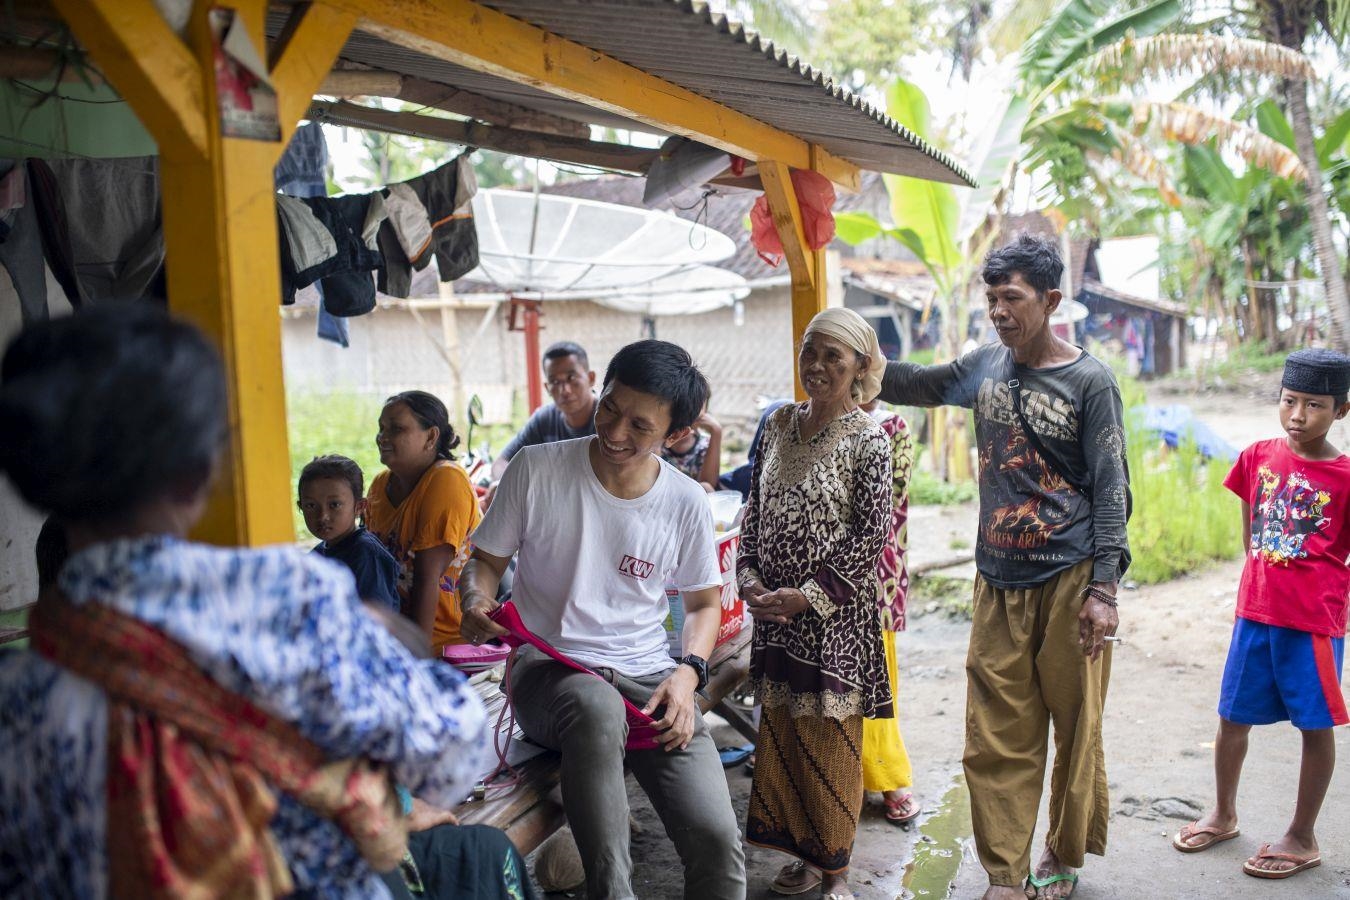 Dr. Christian Sikite ist Arzt und unterstützt in der Provinz Banten, im Westen der Insel Java, Überlebenden des Tsunamis mit medizinischer Hilfe. (Foto: Bente Stachowske)